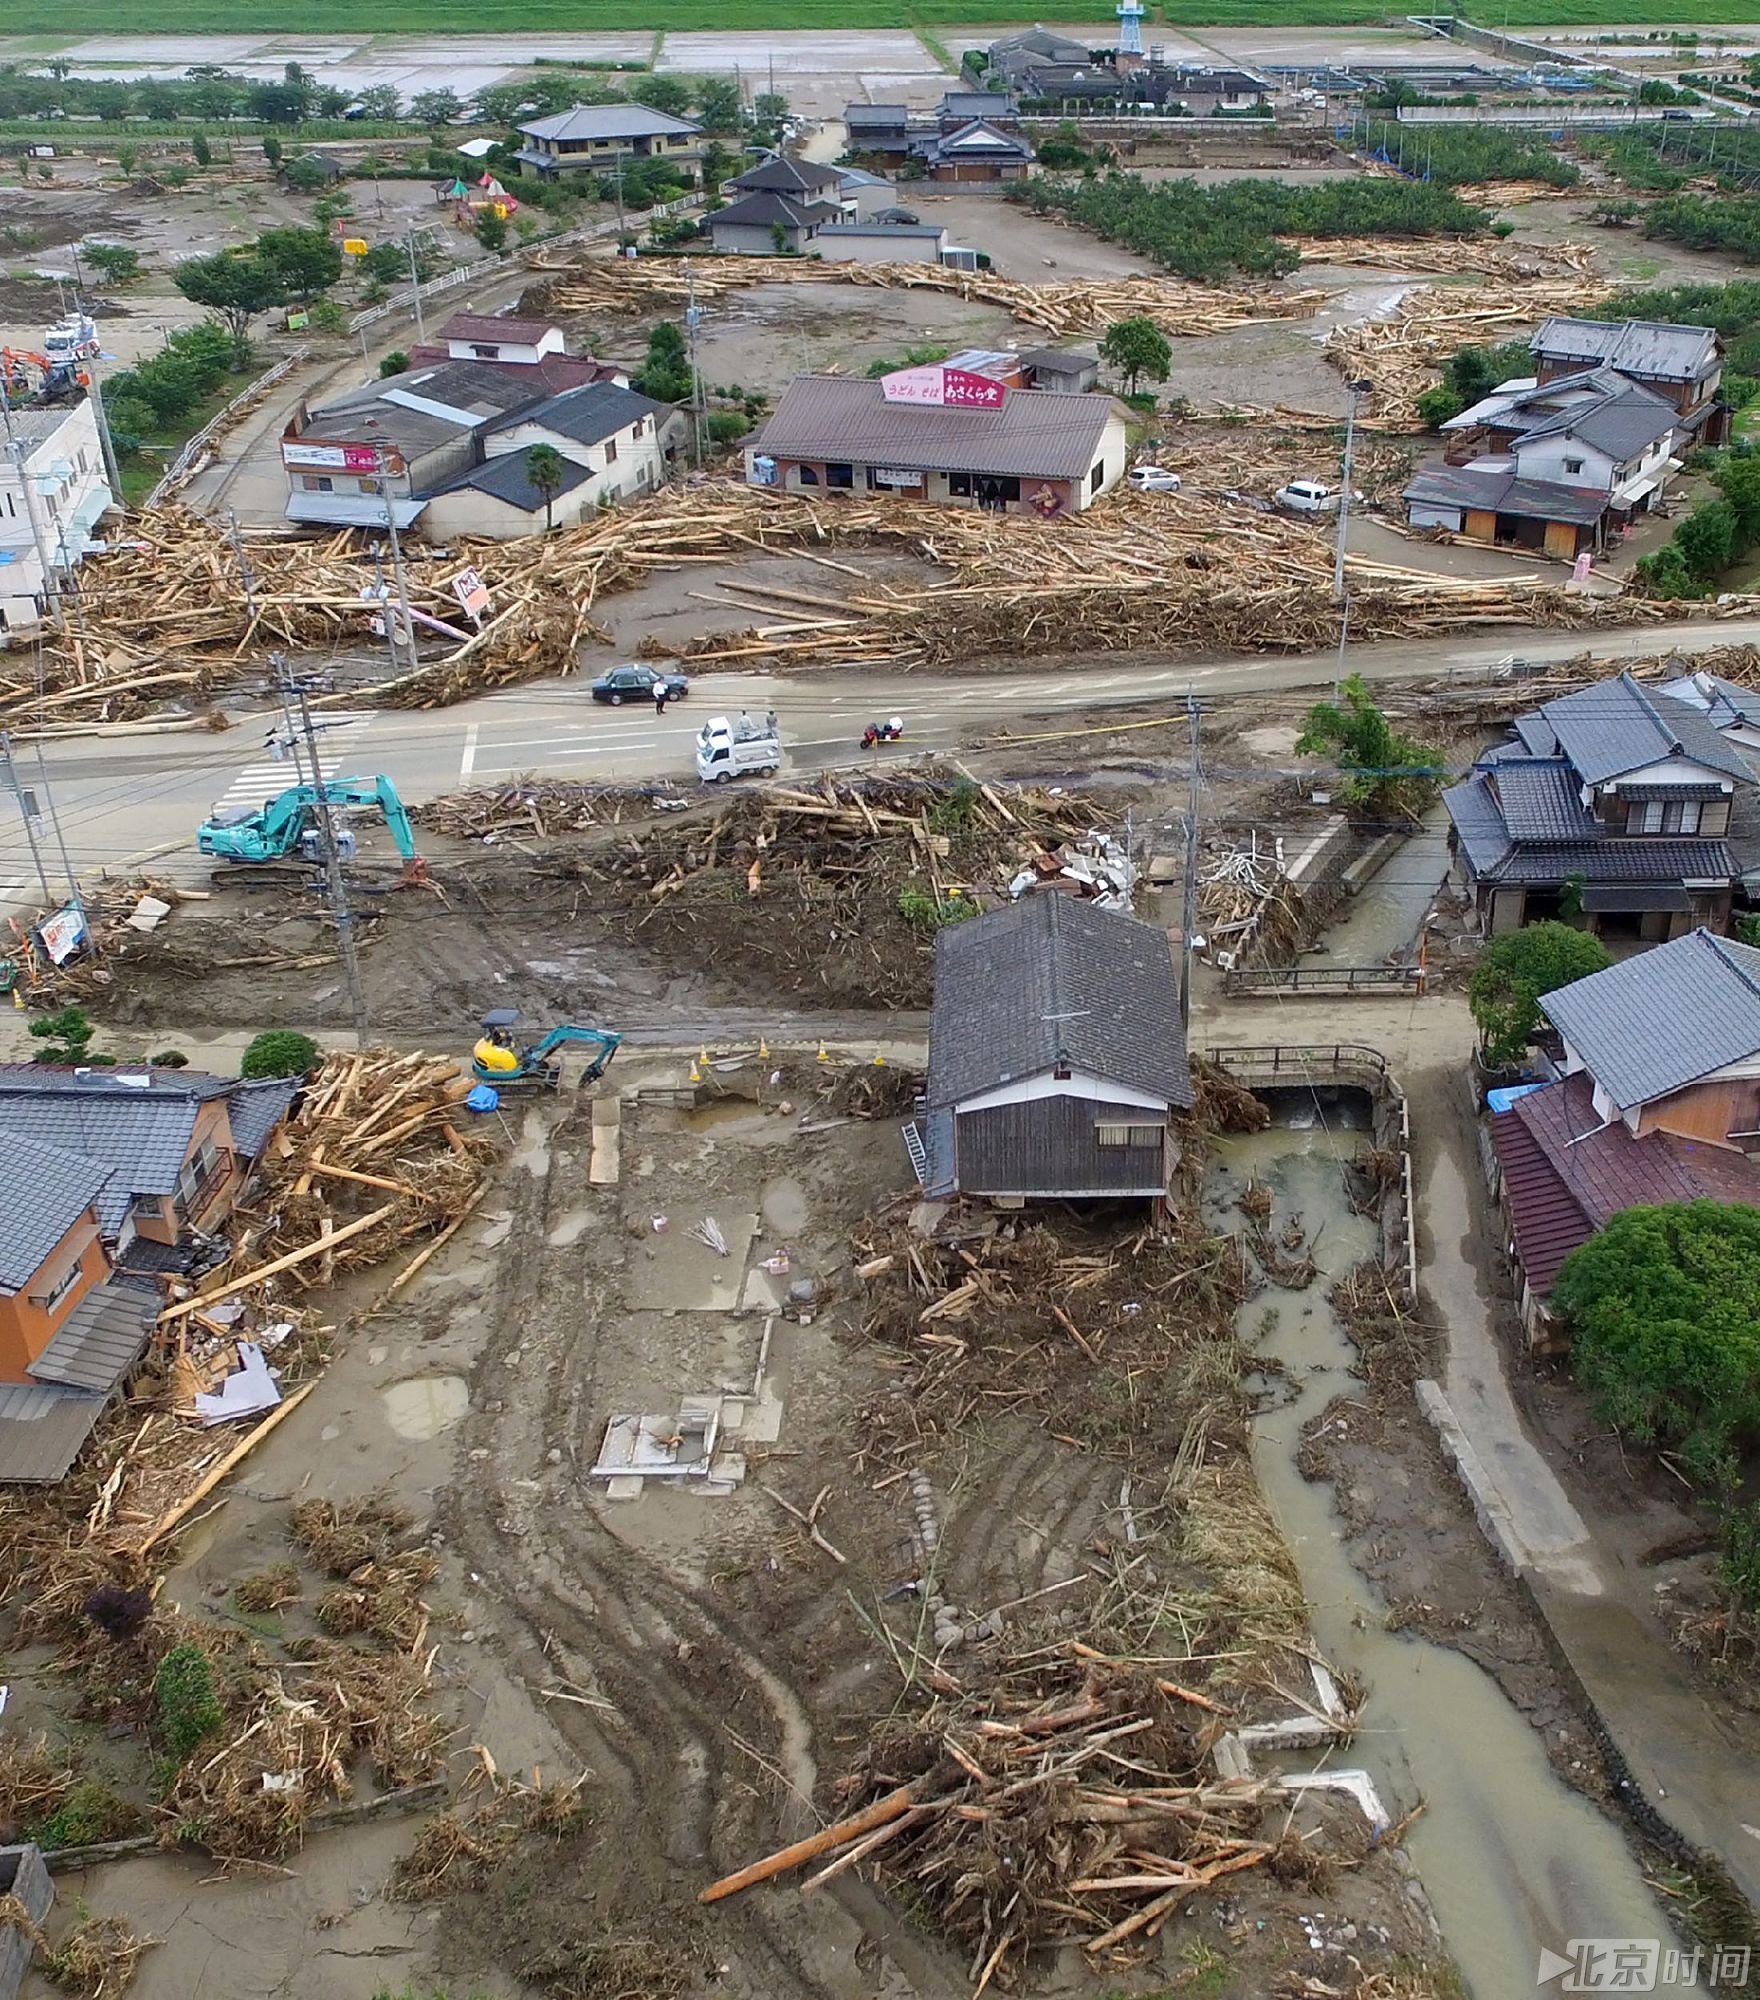 日本九州暴雨灾害死亡人数上升至25人 铁路桥被冲毁